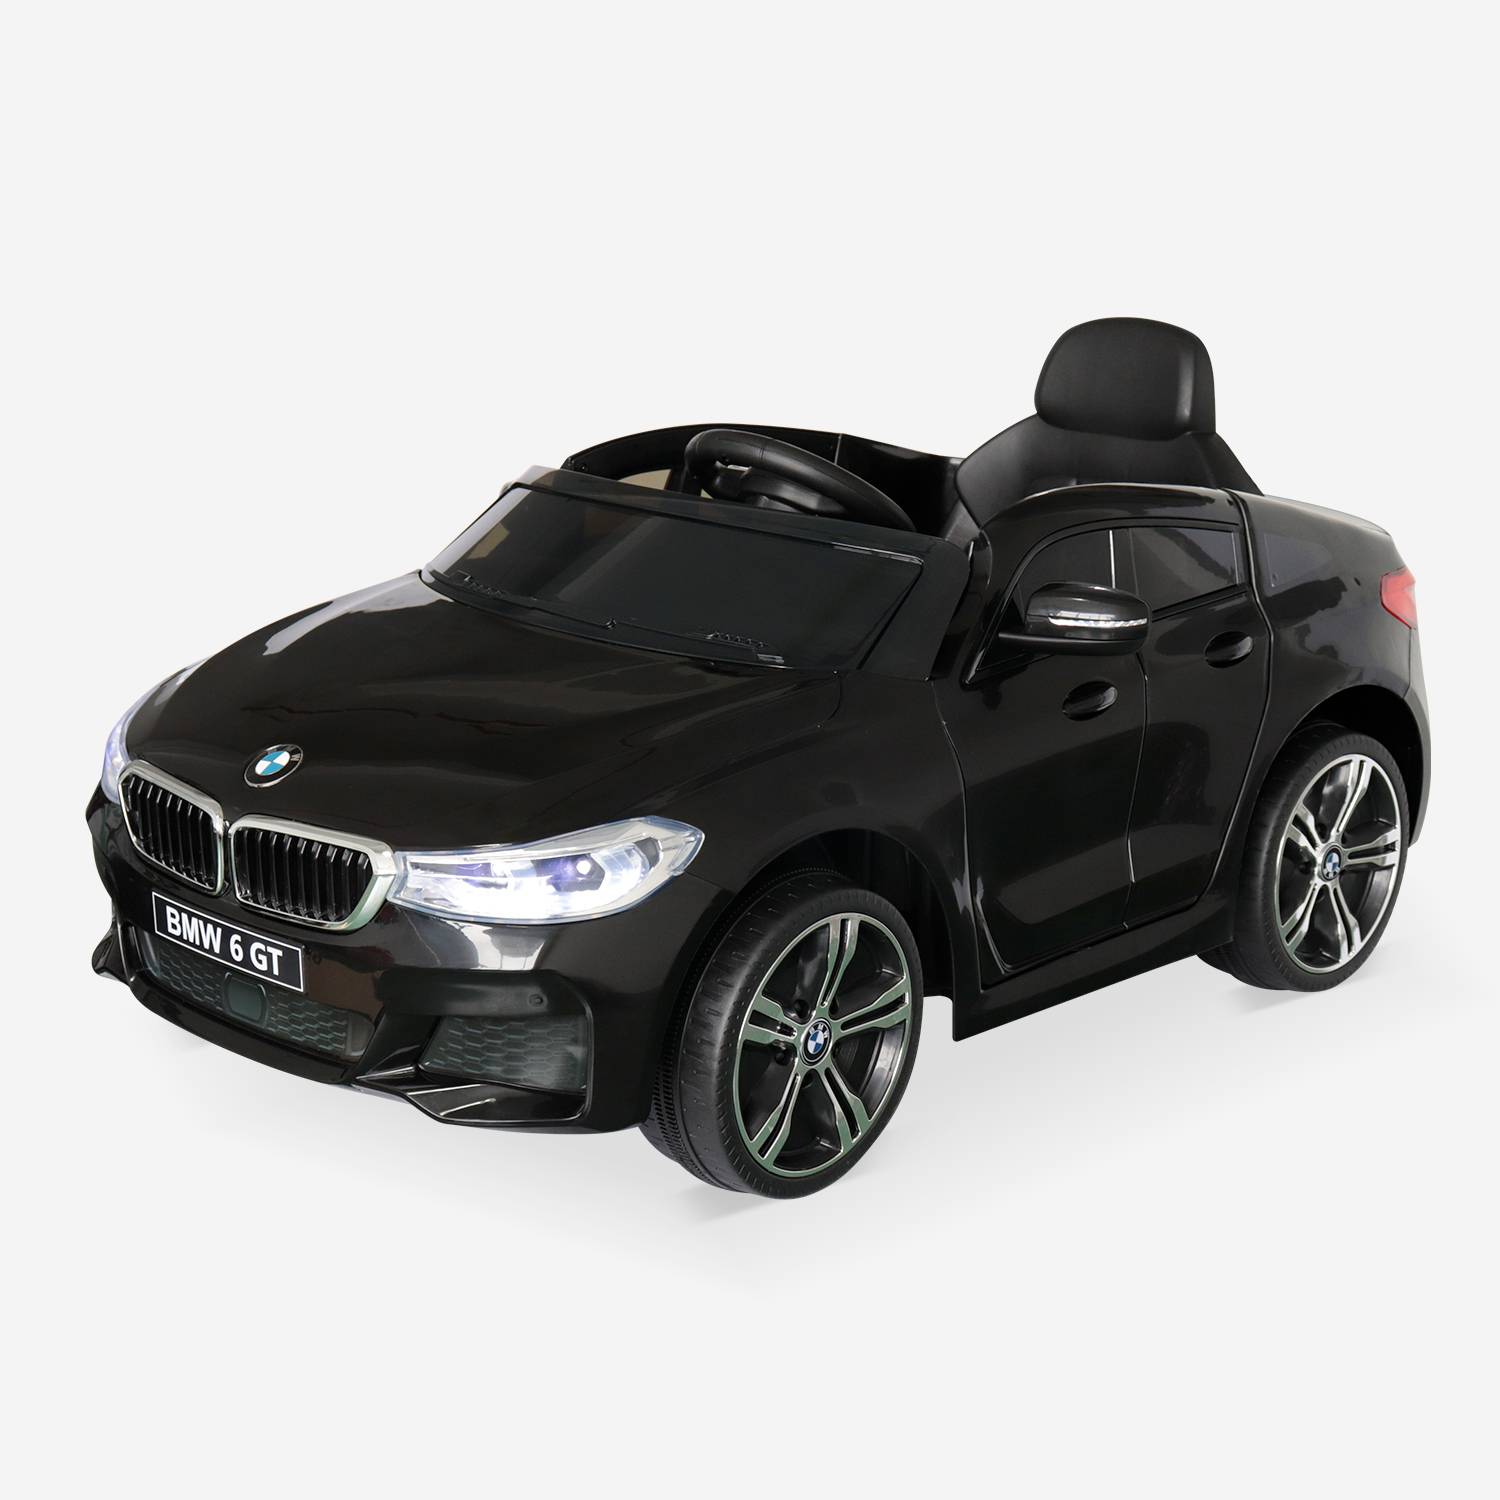 BMW GT6 Gran Turismo zwart, elektrische auto 12V, 1 plaats, cabriolet voor kinderen met autoradio en afstandsbediening Photo3